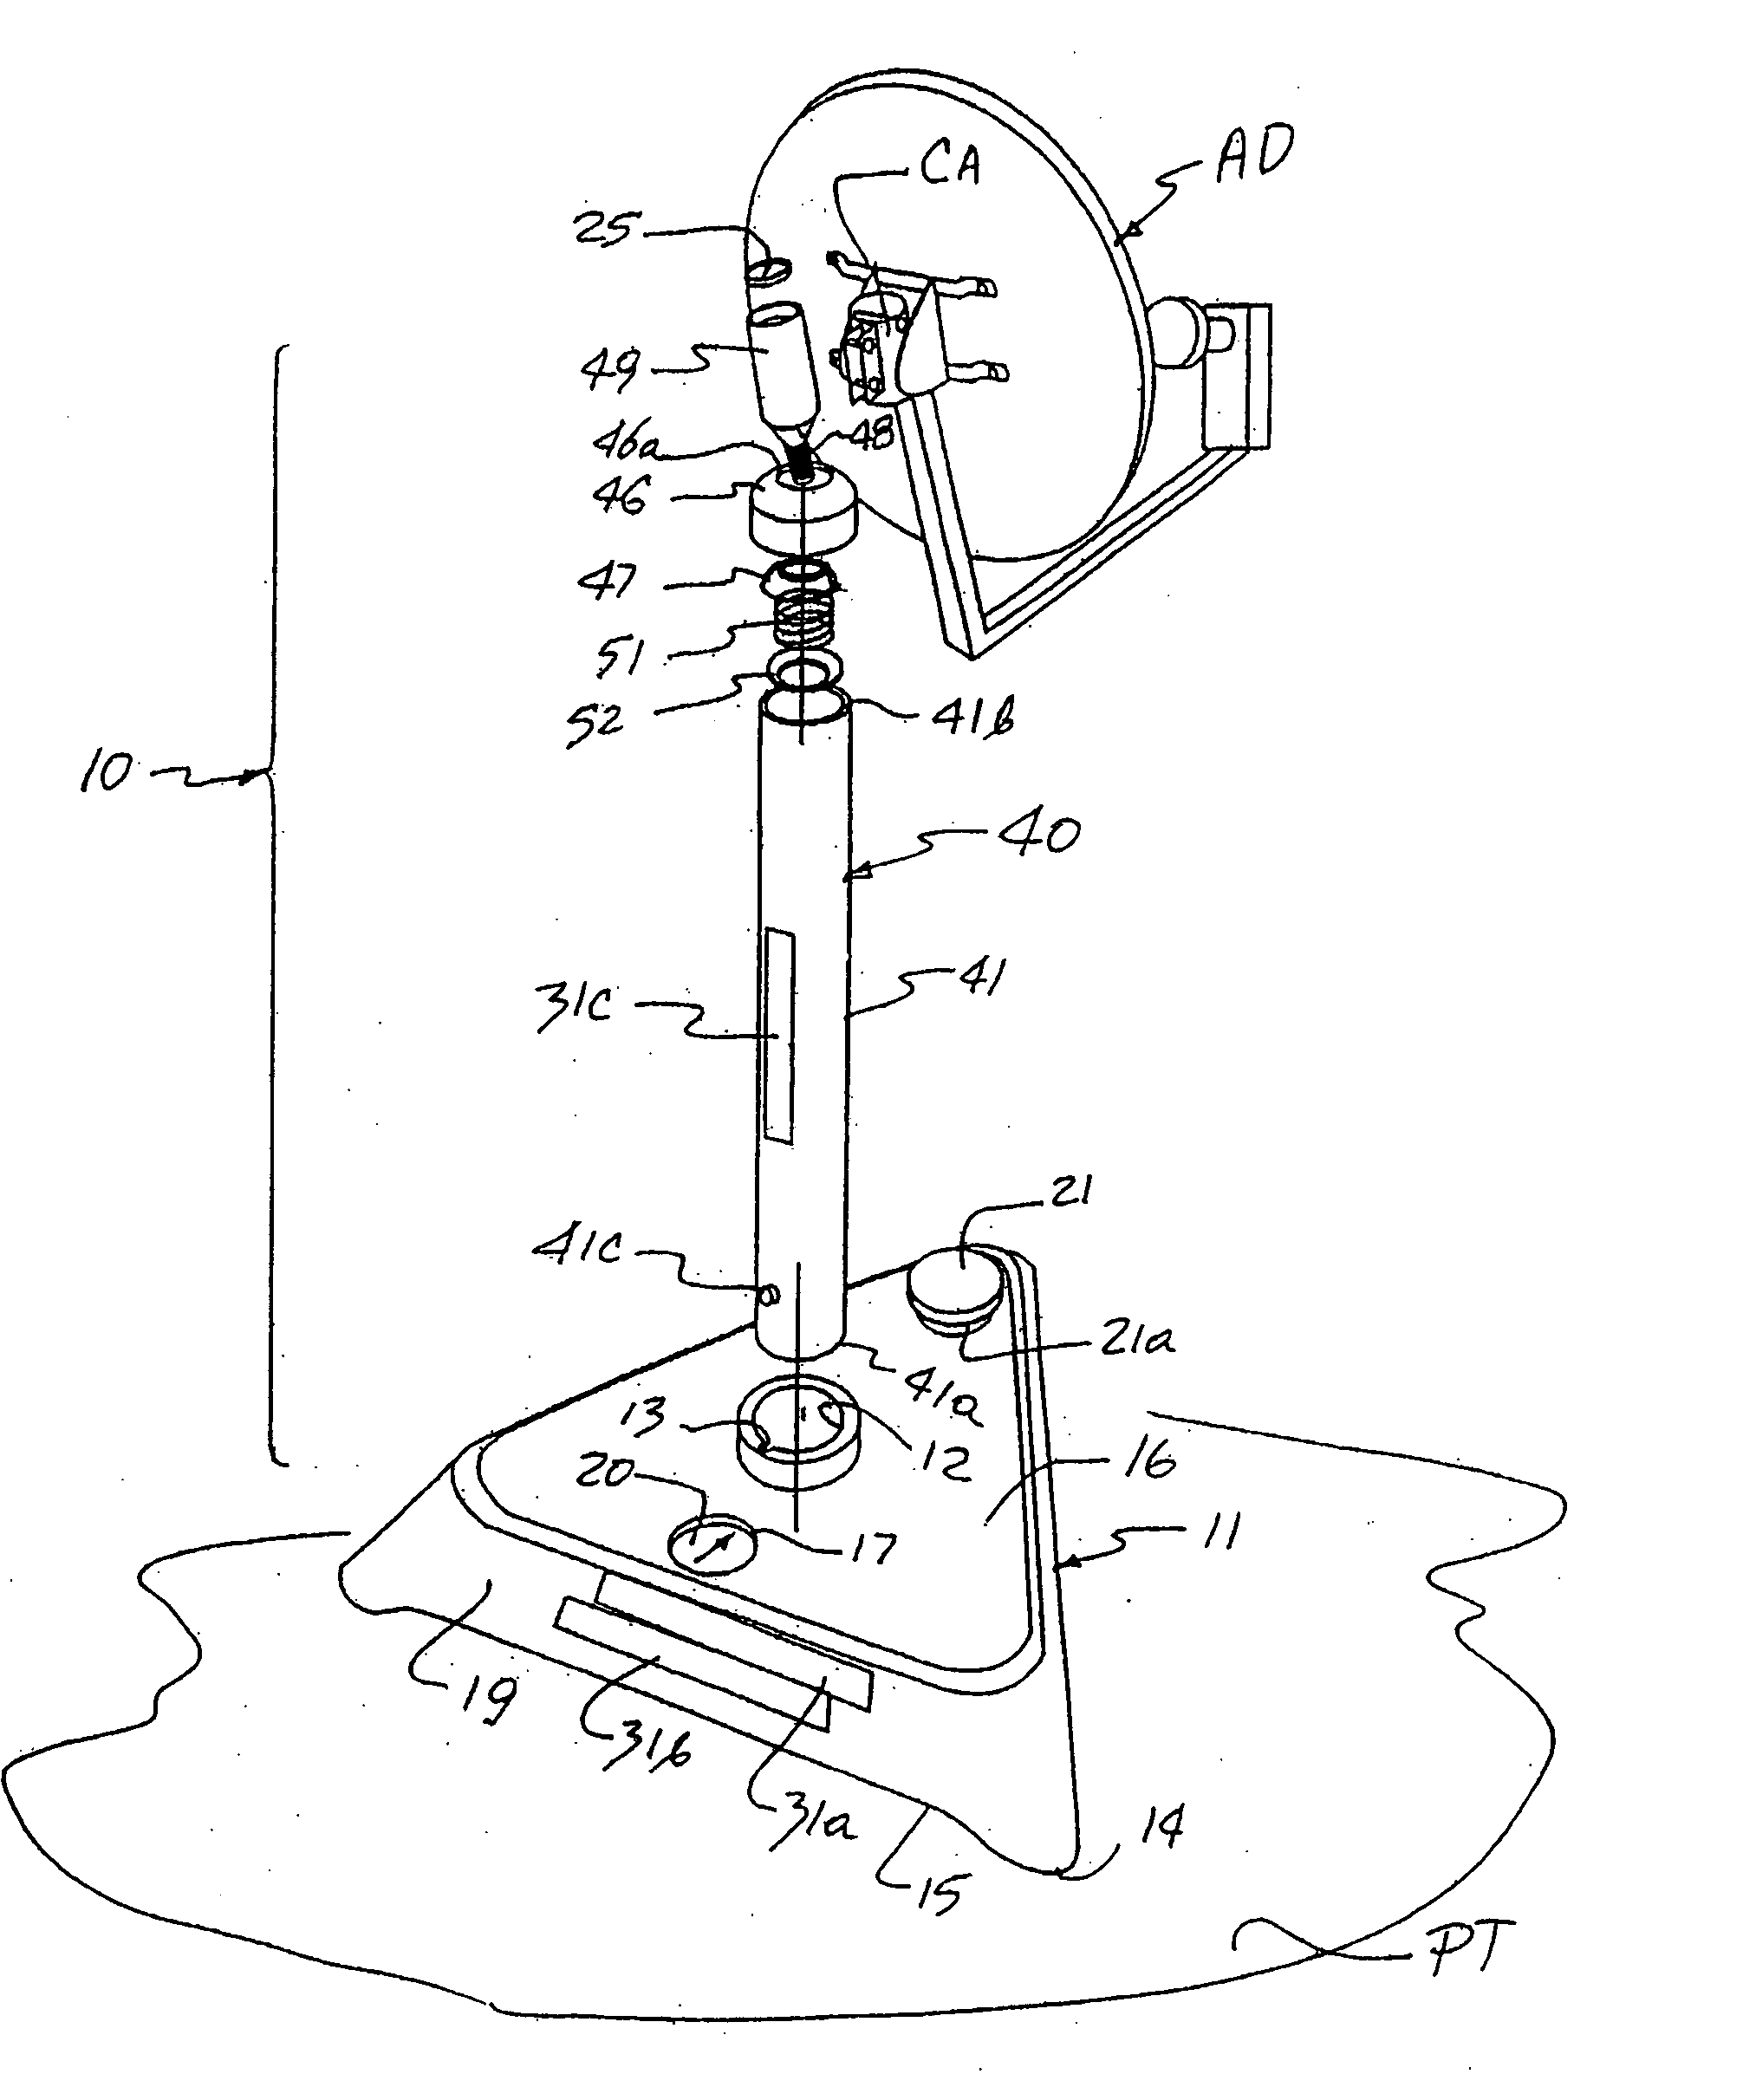 Satellite dish antenna mount